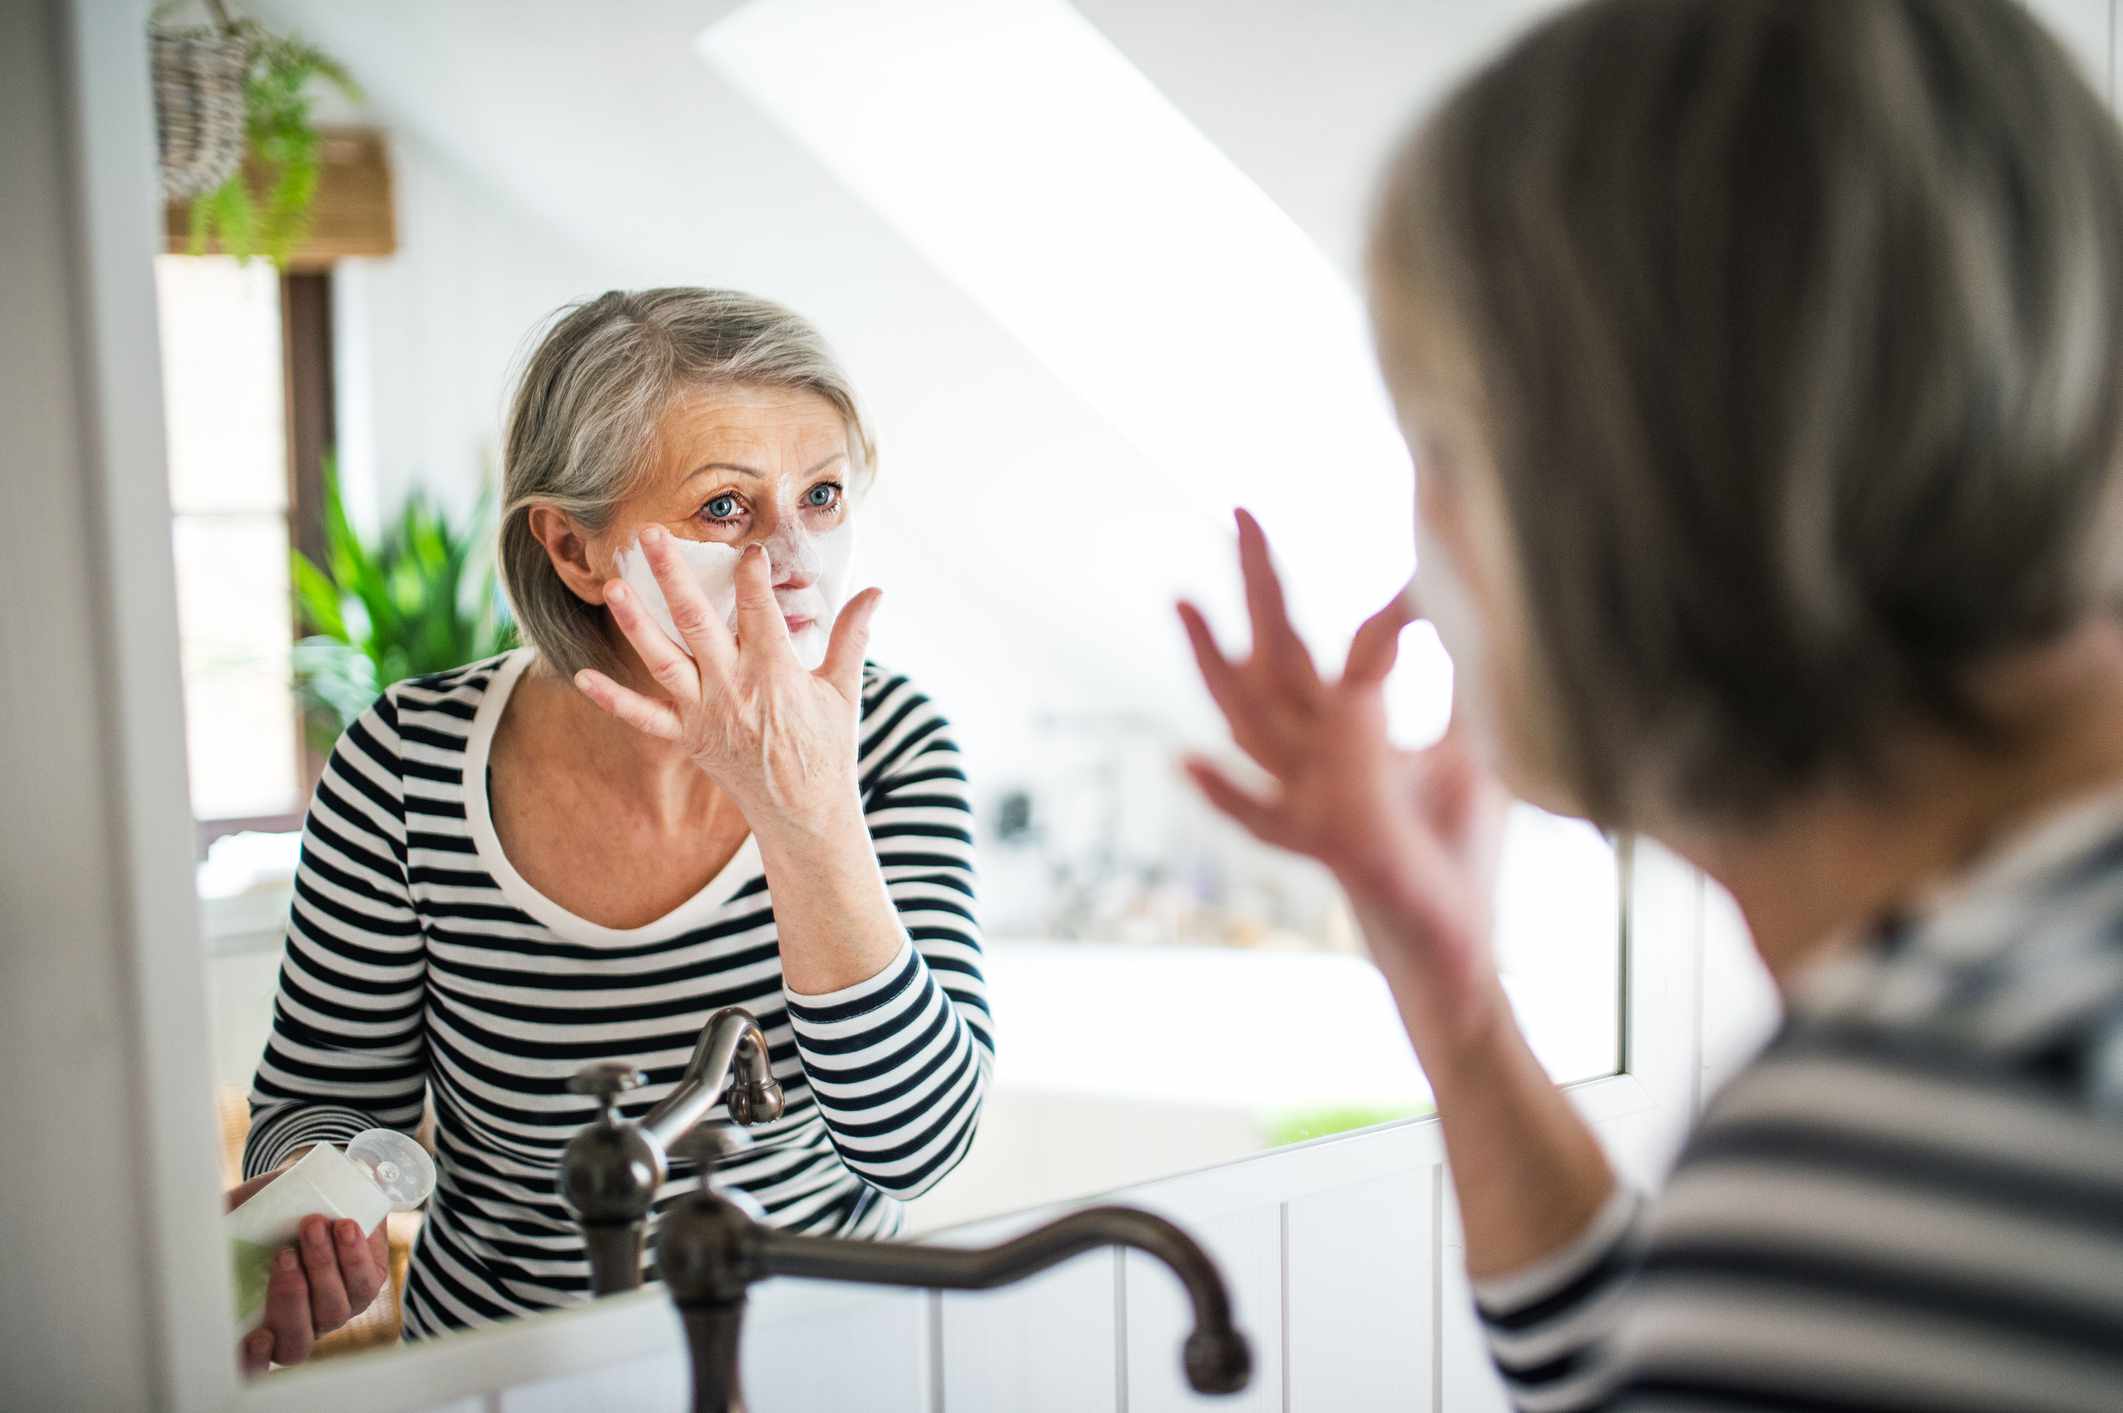 Una mujer mayor con camisa de rayas se aplica una mascarilla facial en el espejo